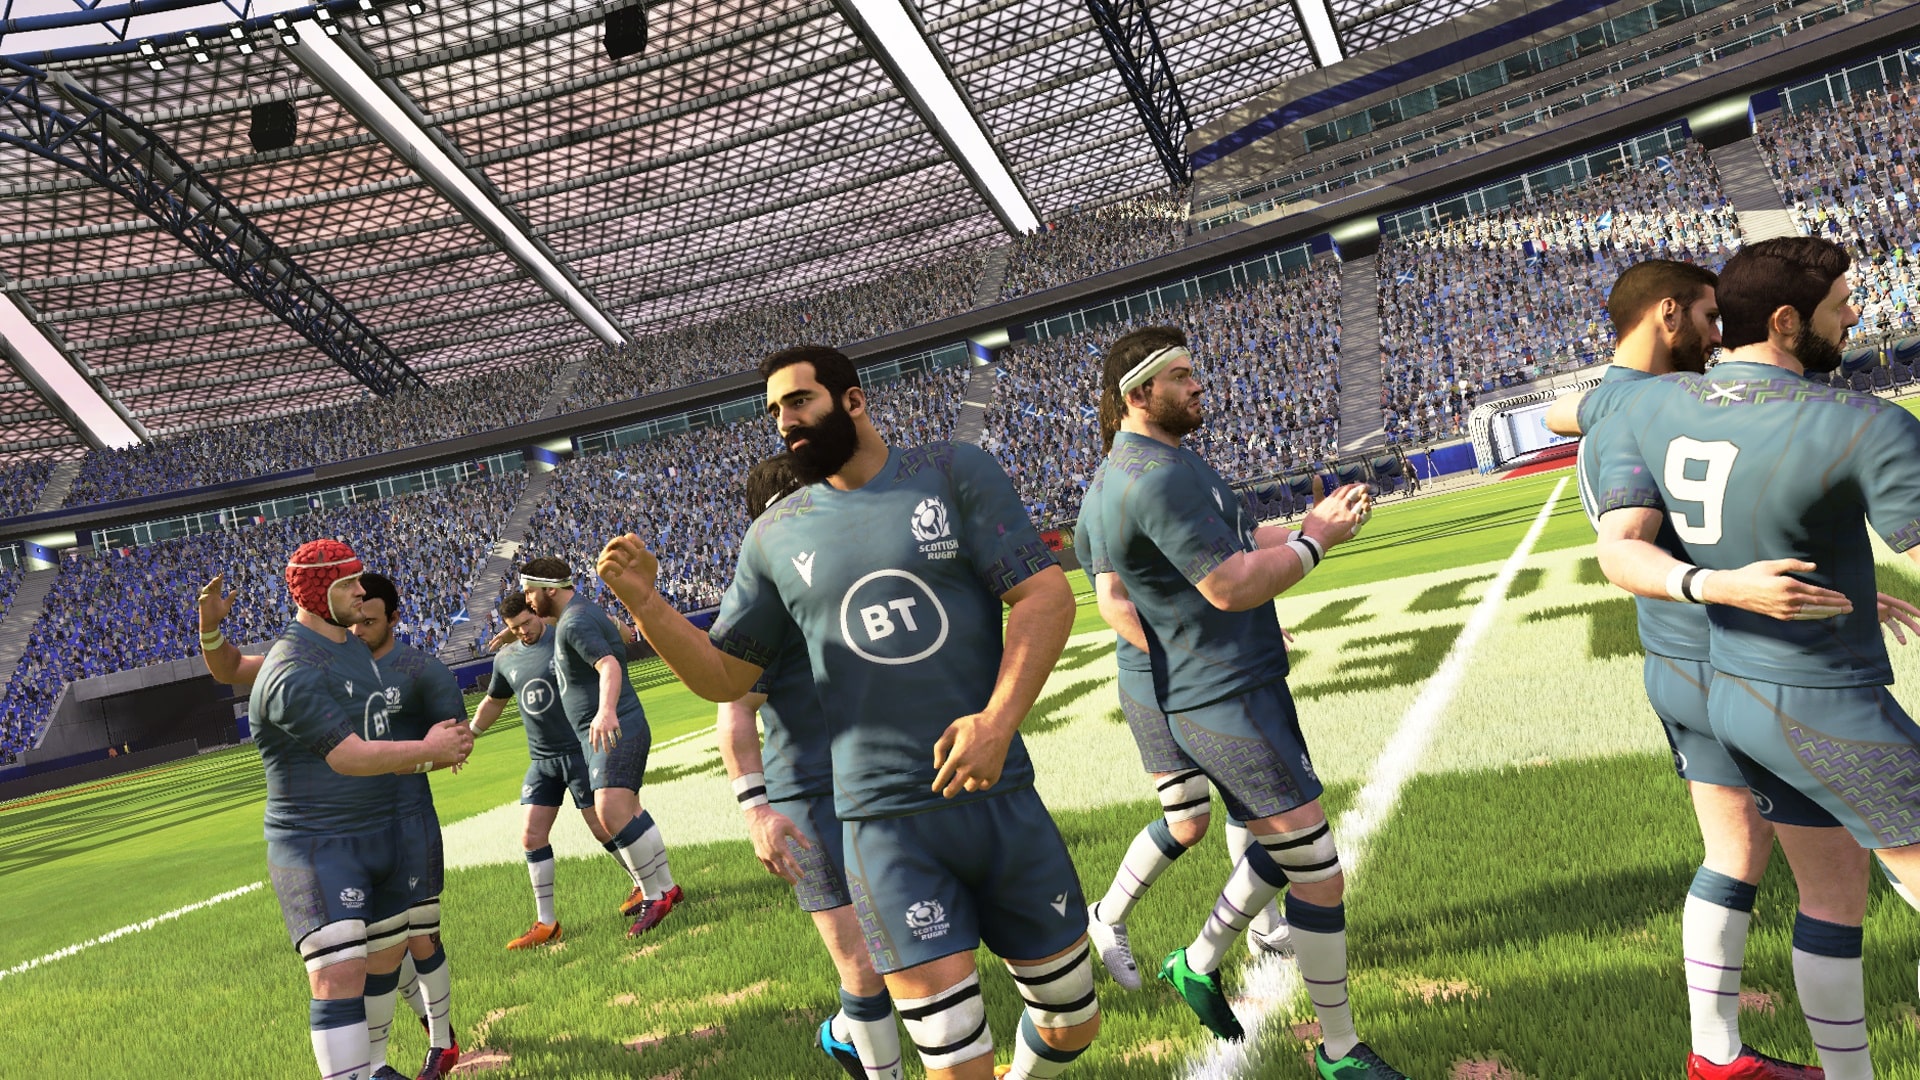 Rugby 20 - screenshot 1